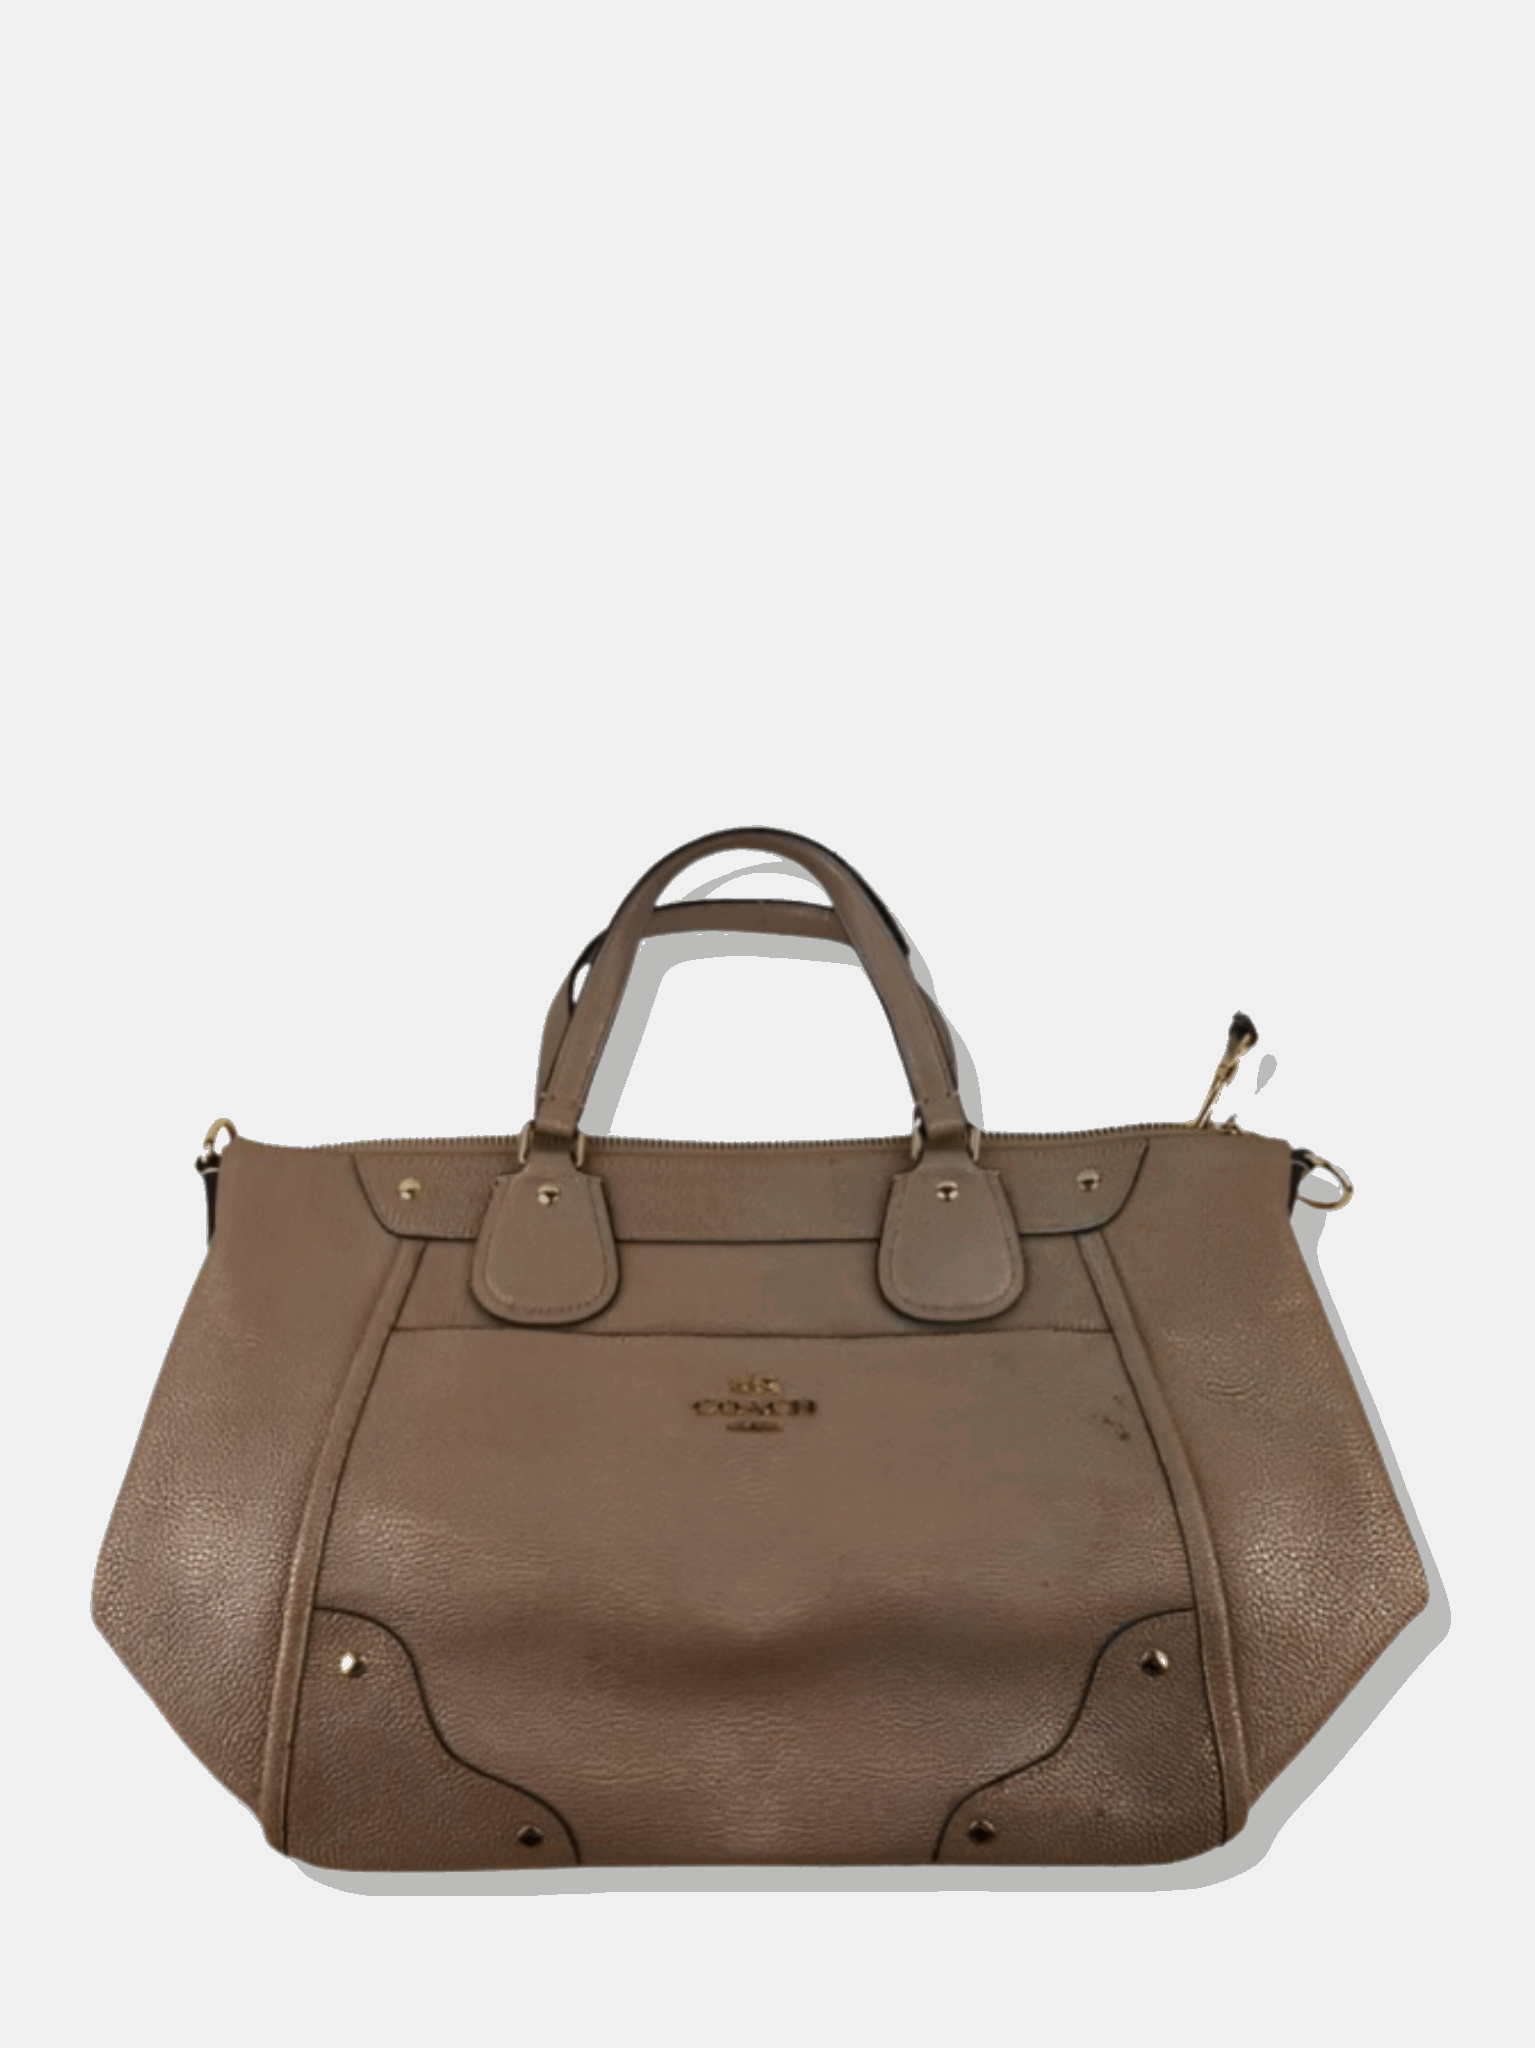 Grey Pebbled Leather Shoulder Bag Handbag